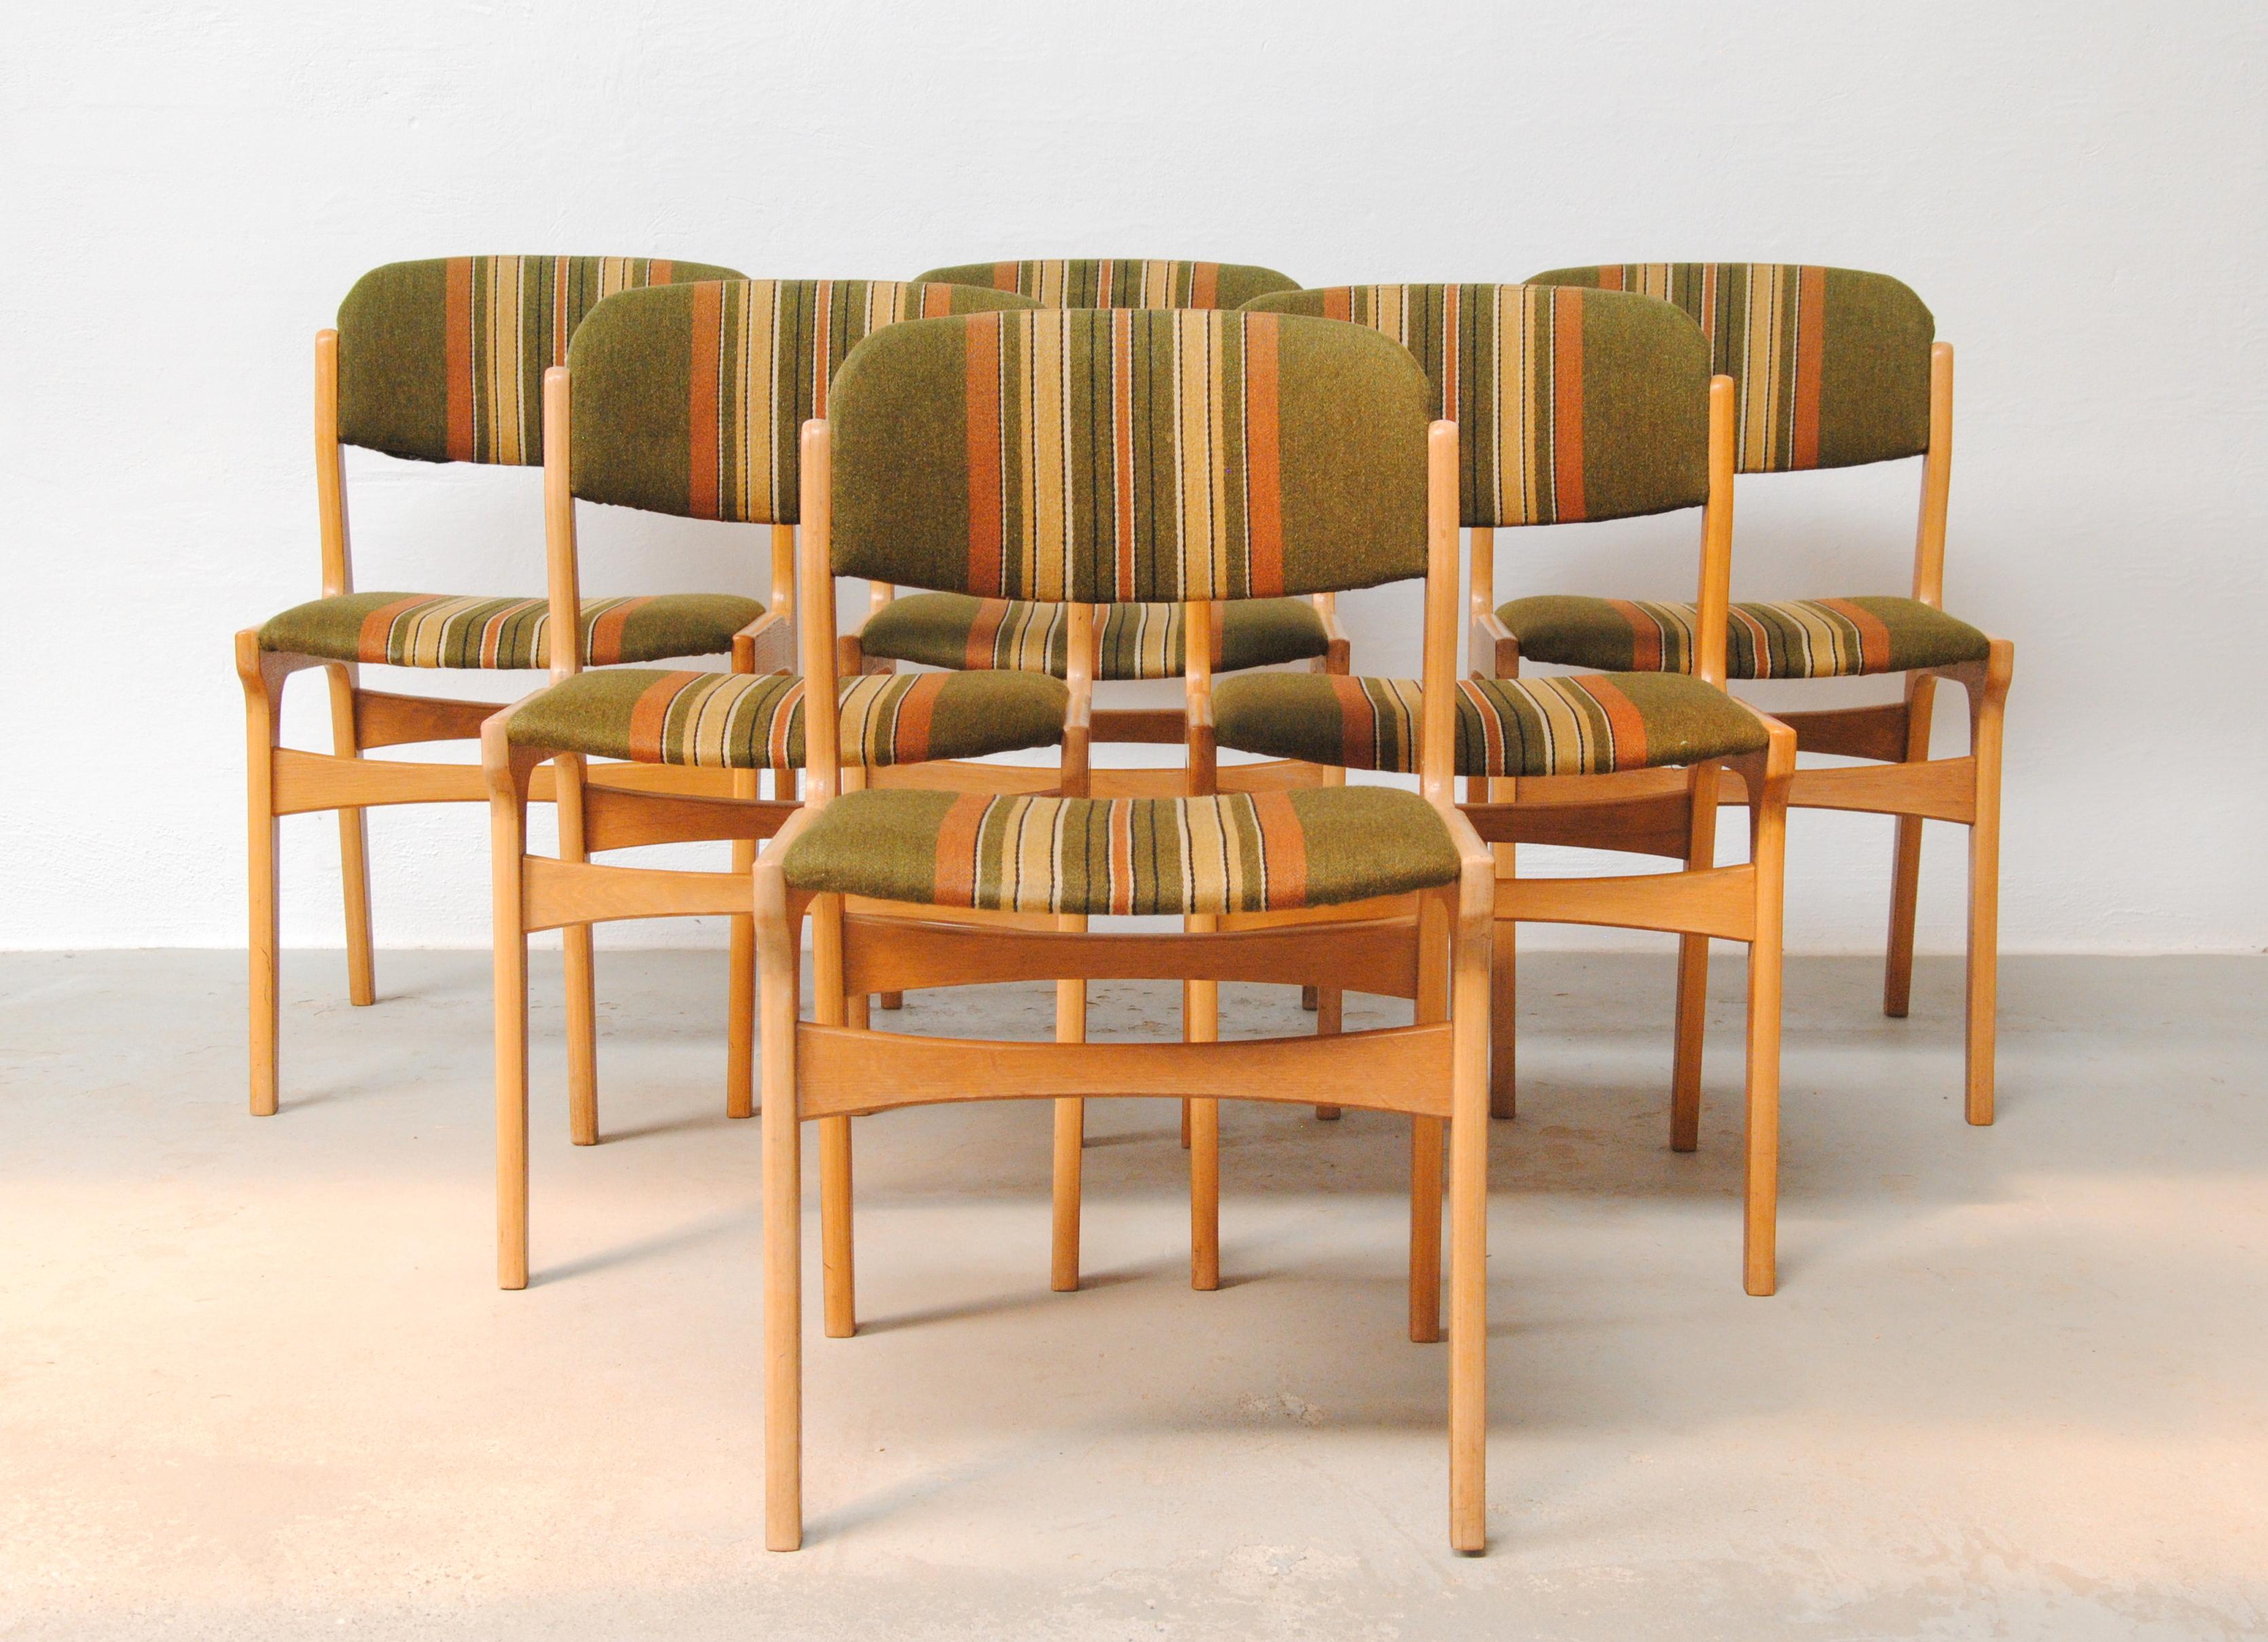 1970's Set von sechs dänischen Eiche furniert Esszimmerstühle

Die Stühle mit ihrer farbenfrohen Polsterung aus den 1970er Jahren sind in einem guten Vintage-Zustand und wurden von unseren Schreinern überprüft und aufgearbeitet, um sicherzustellen,